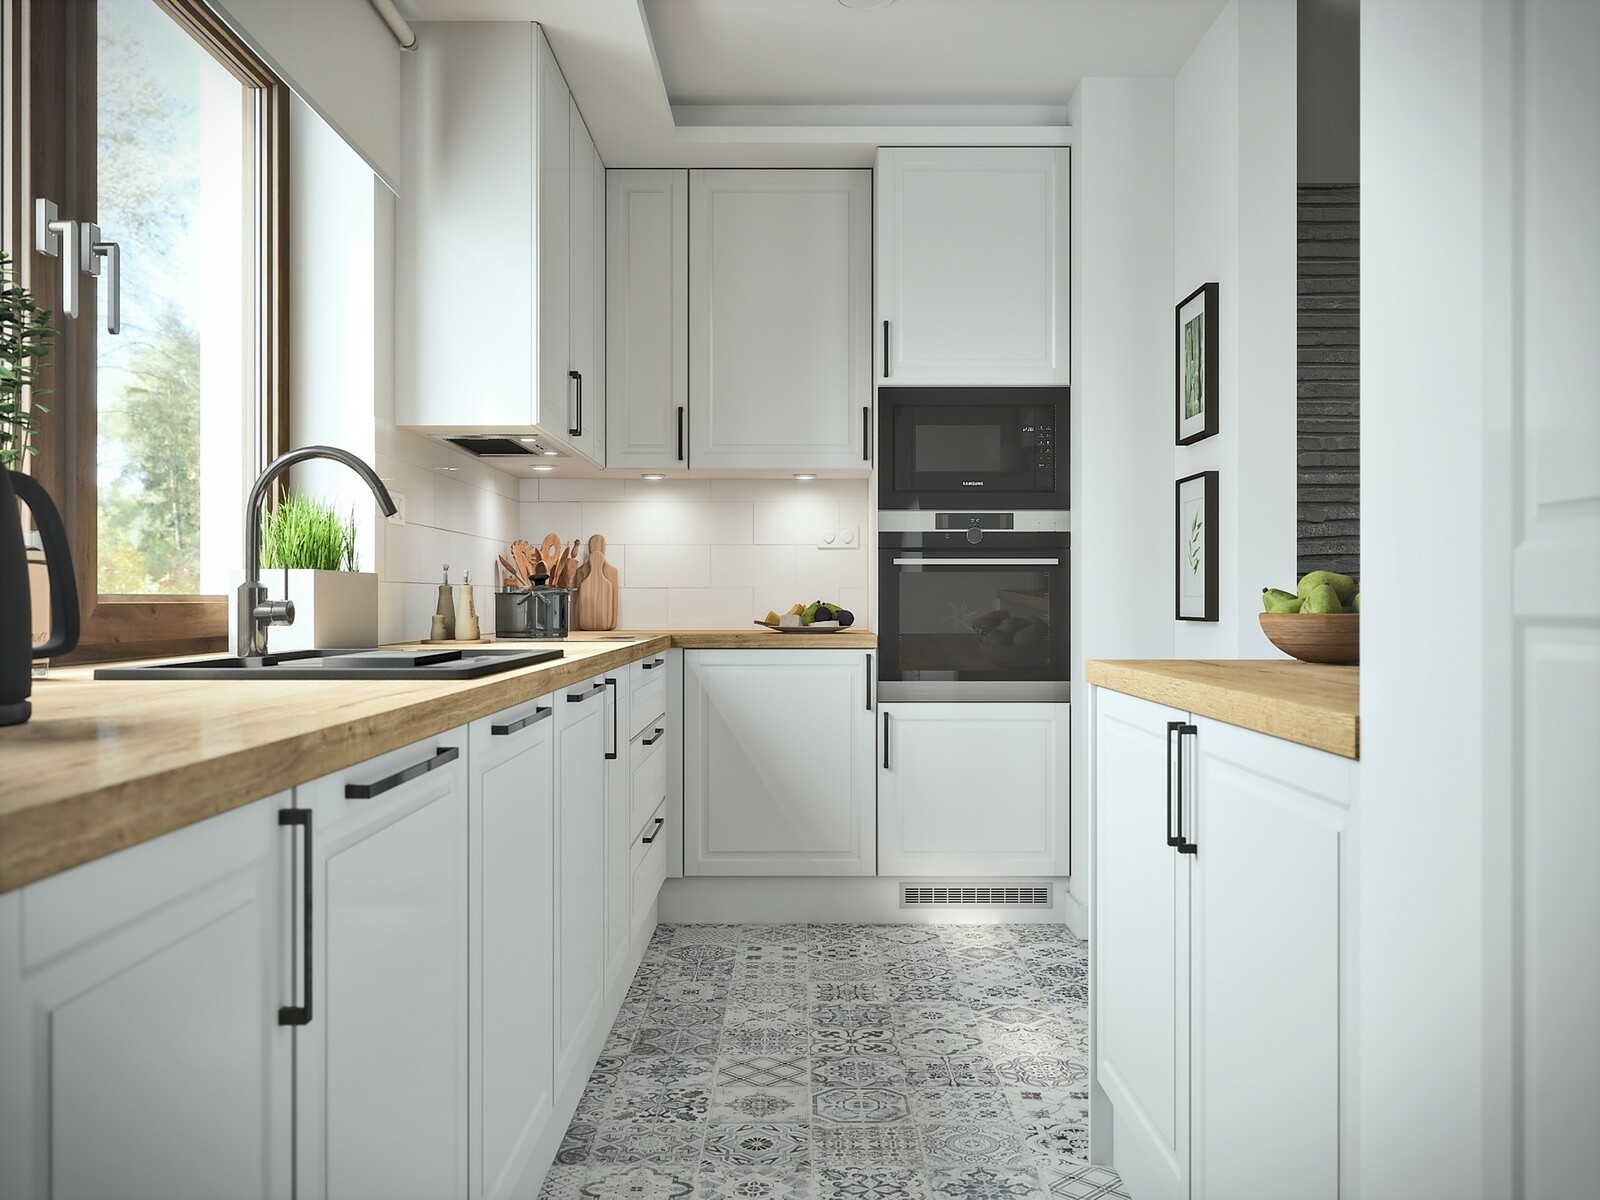 Classic White Kitchen Interior Archviz - Unreal Engine / UE4 + RTX